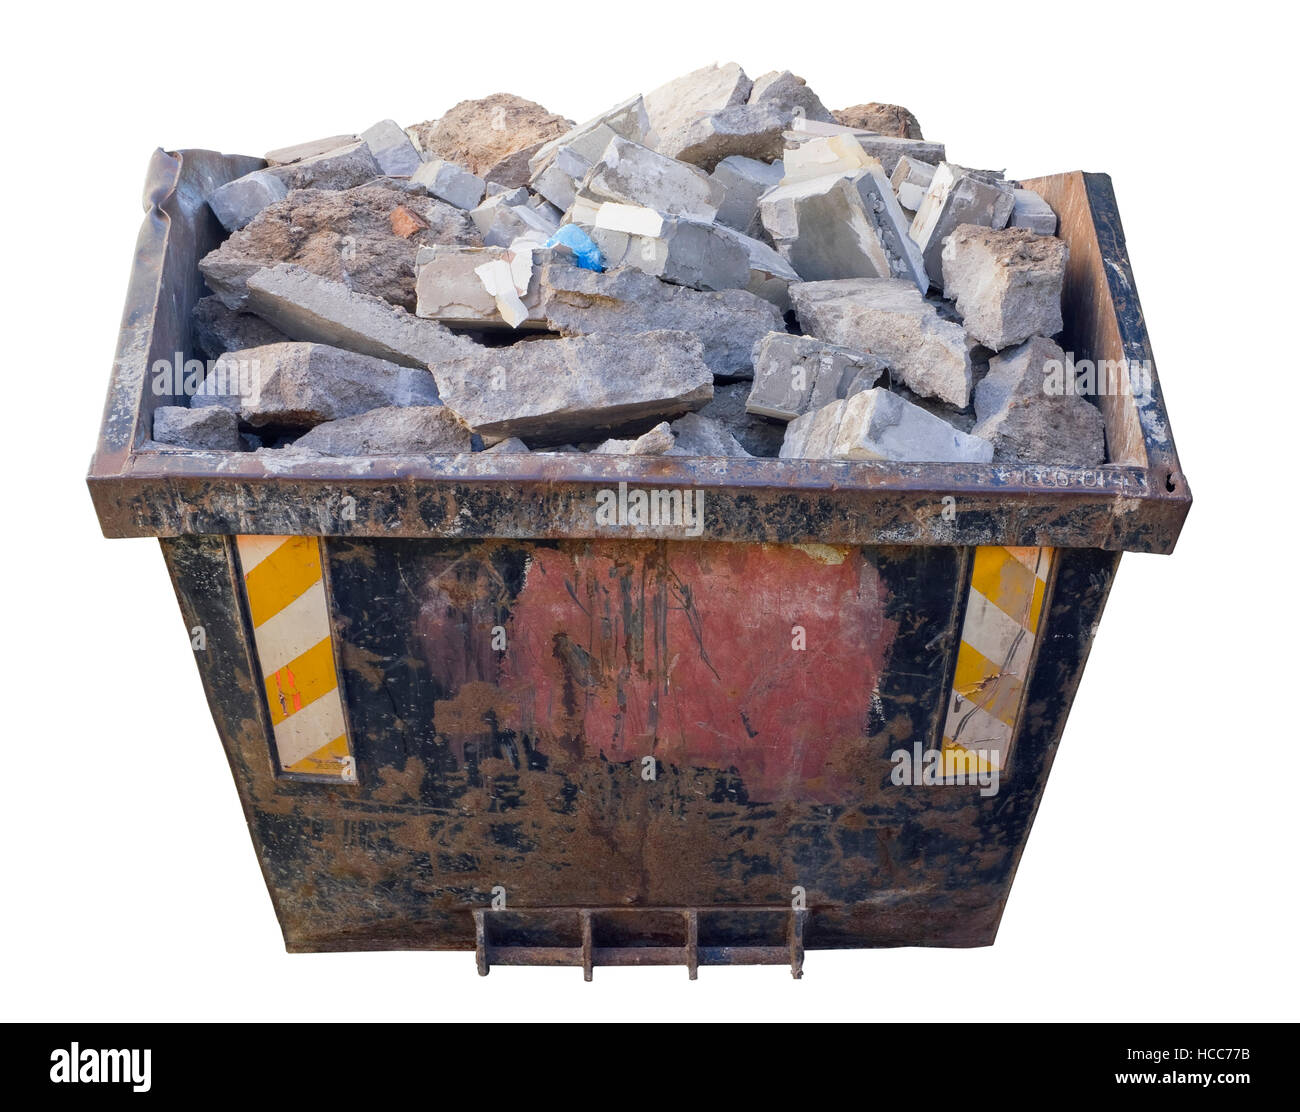 Großen rostigen Stahl-Container geladen mit Fragmenten von Beton- und Bau-Steinen. Isoliert mit patch Stockfoto